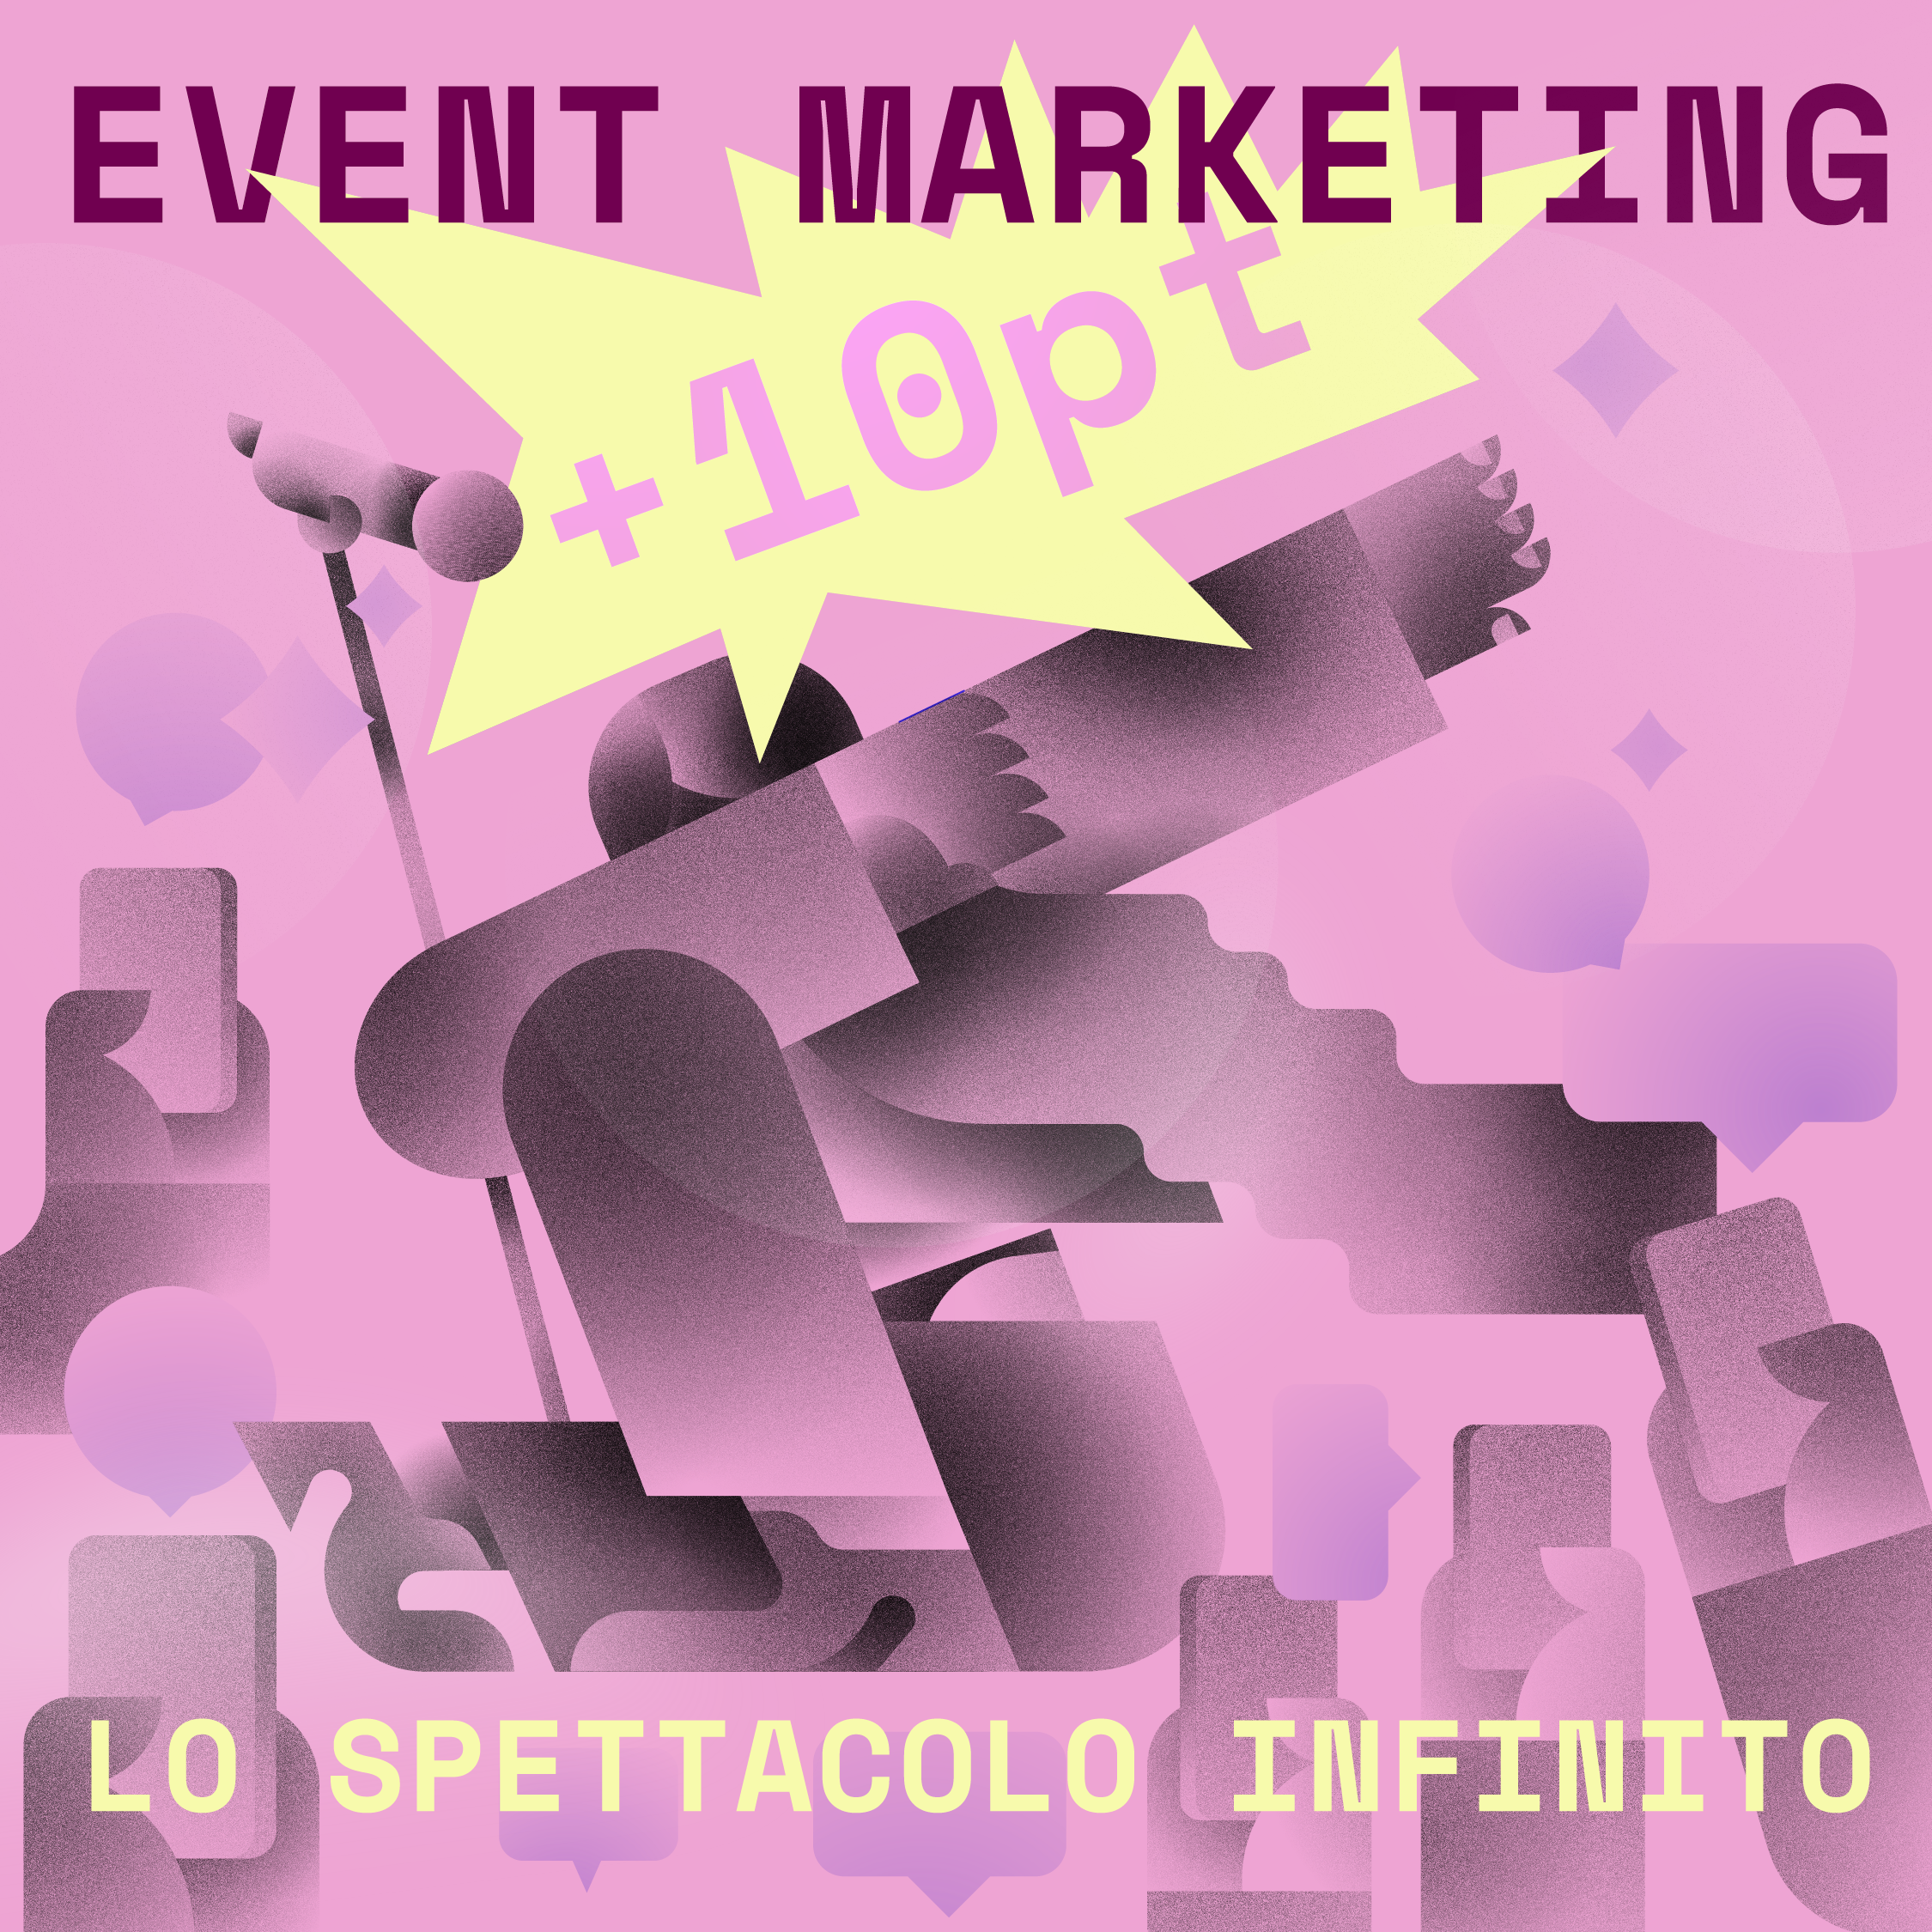 Event marketing, lo spettacolo infinito